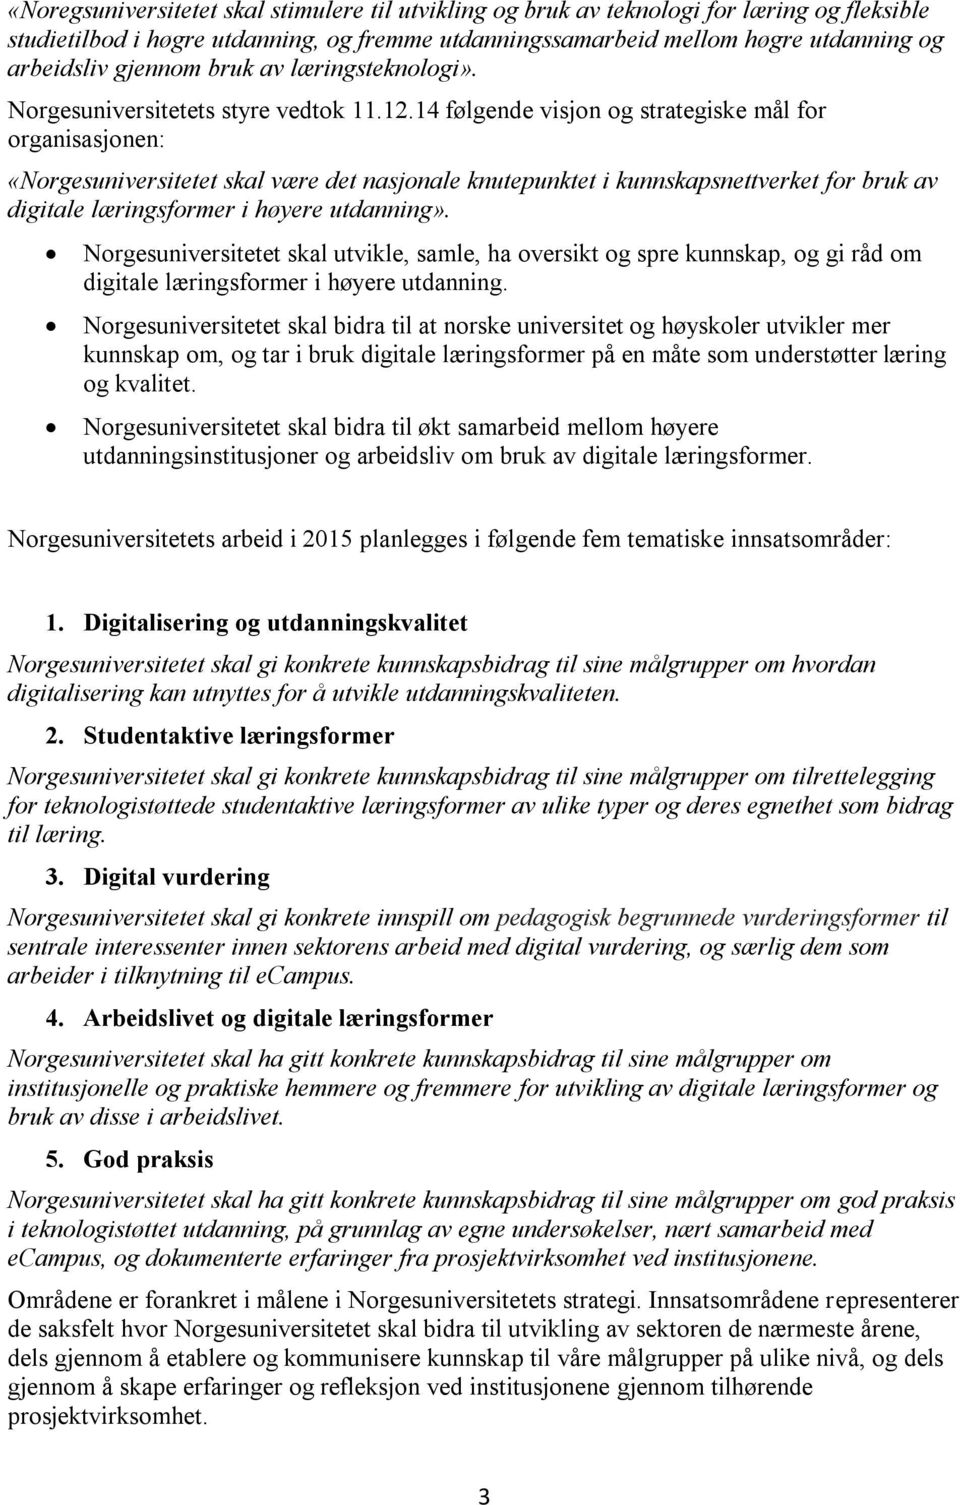 14 følgende visjon og strategiske mål for organisasjonen: «Norgesuniversitetet skal være det nasjonale knutepunktet i kunnskapsnettverket for bruk av digitale læringsformer i høyere utdanning».